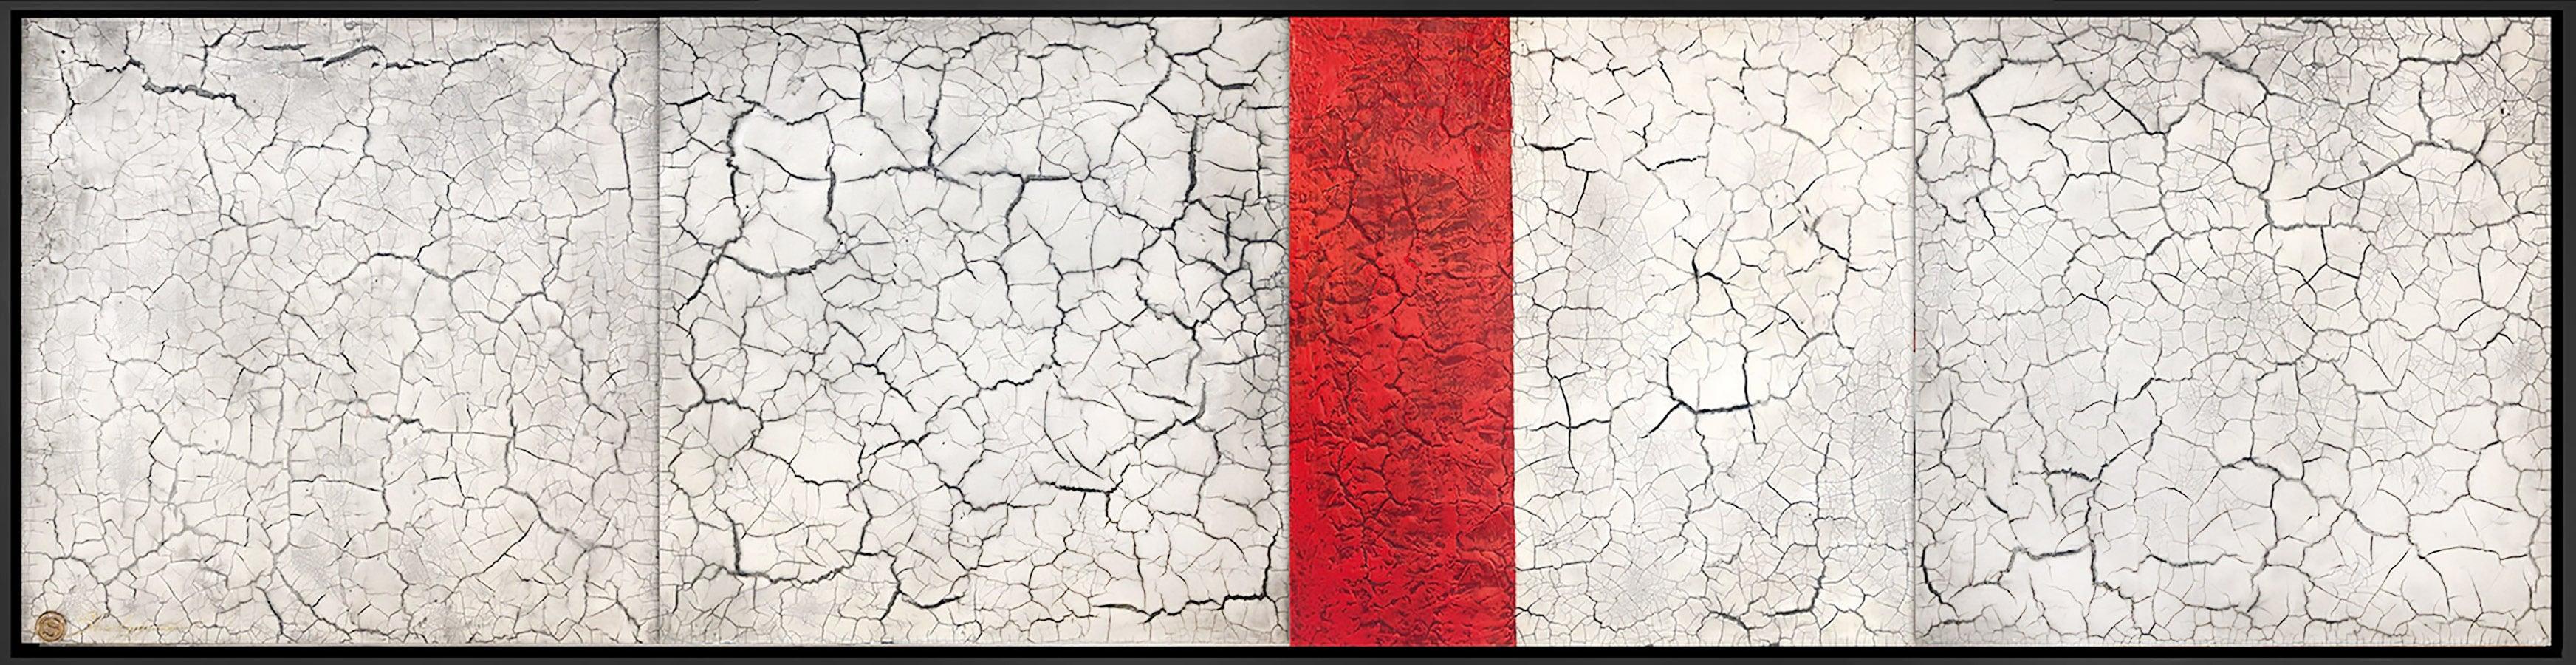 Red White Minimalist Contemporary Modern Mixed Media Abstract Painting 20x80 - Mixed Media Art by Svetlana Shalygina